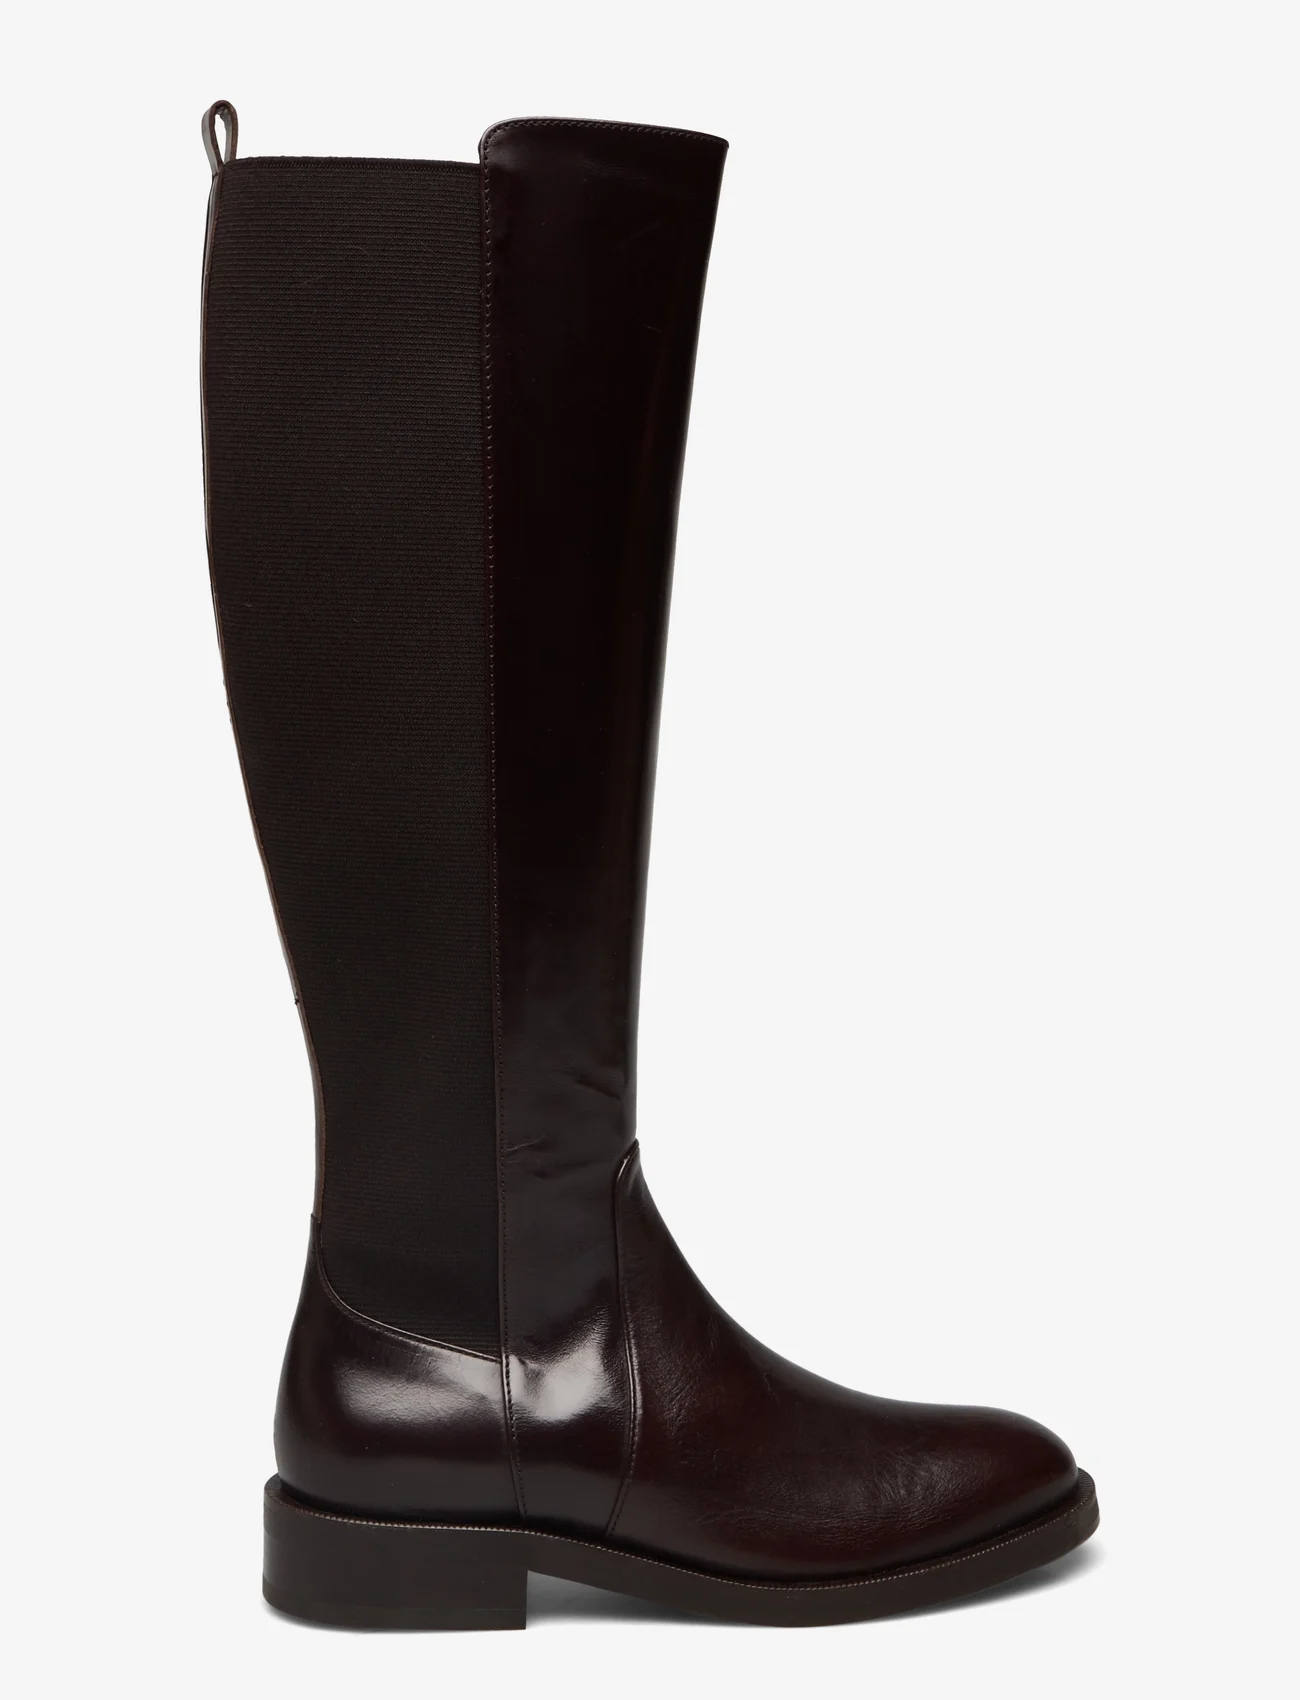 Billi Bi - Long Boots - kniehohe stiefel - espresso desire calf 86 - 1